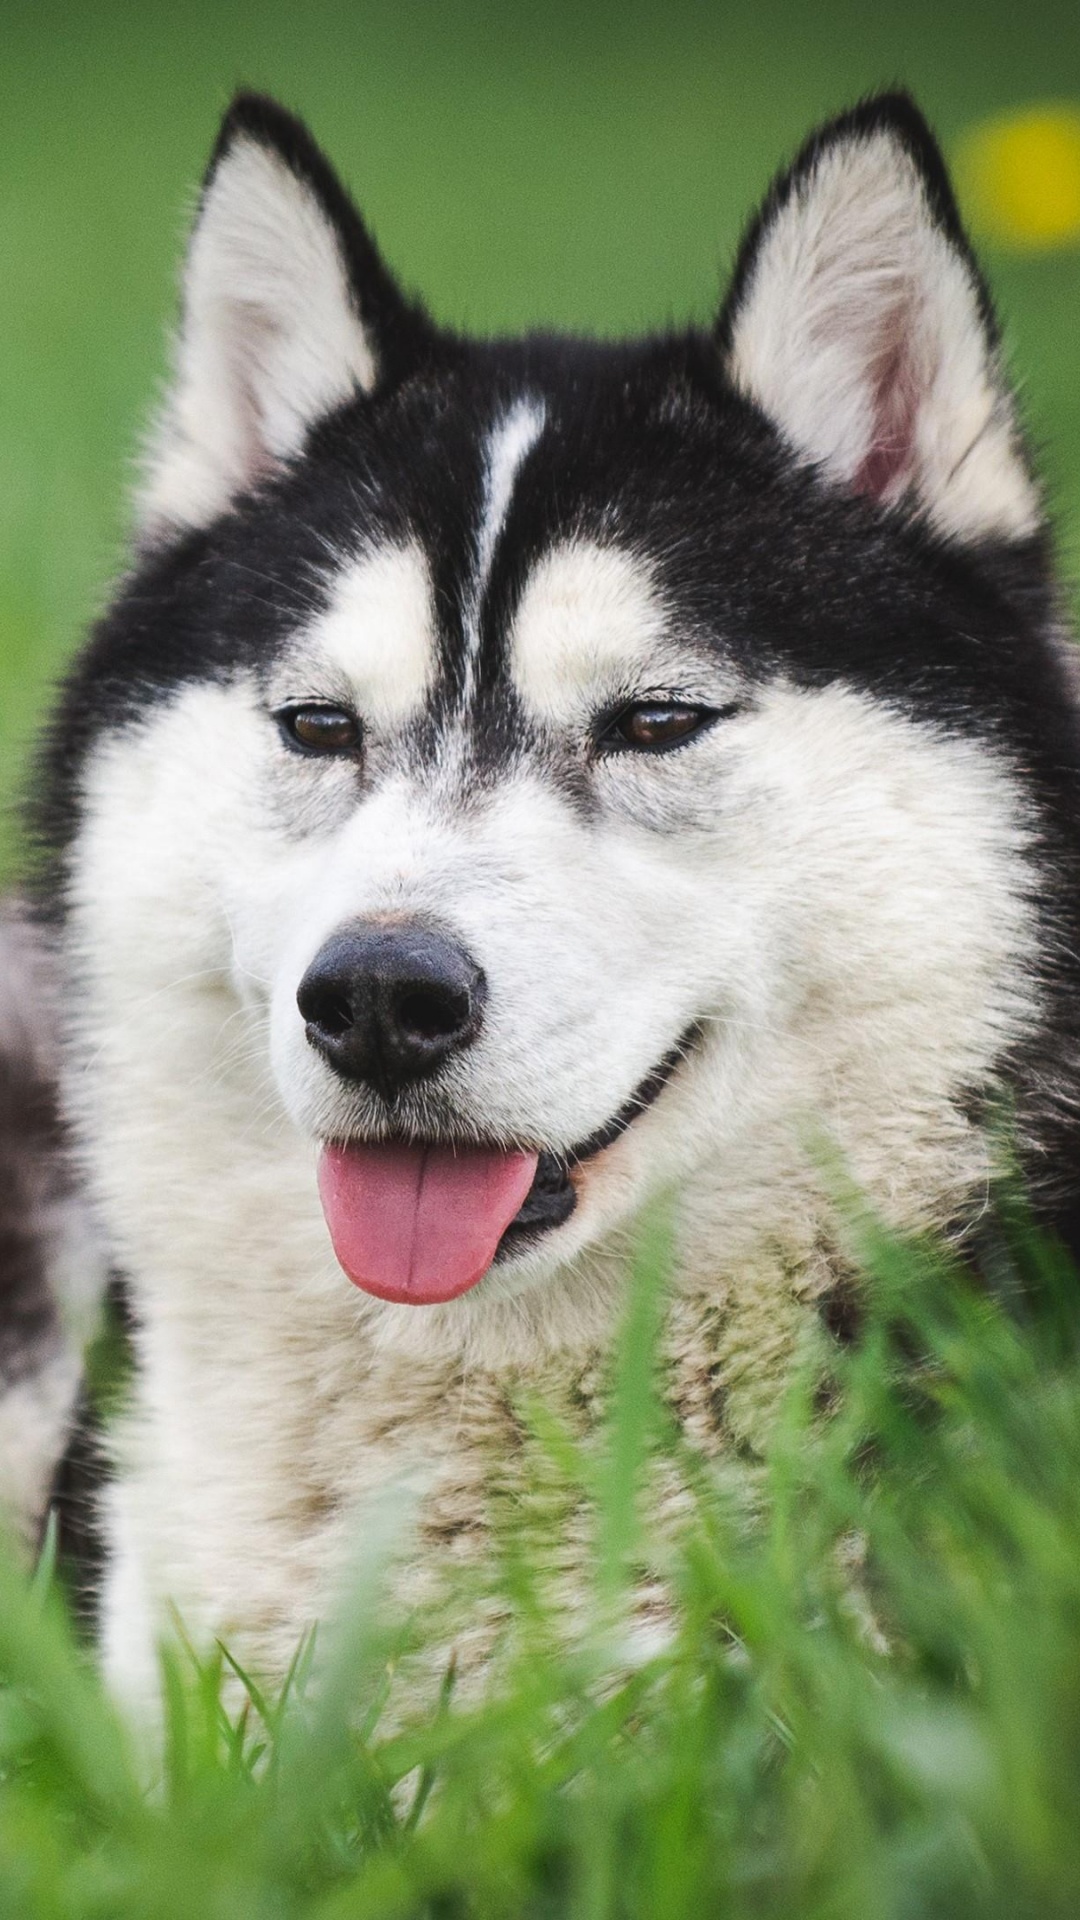 微型哈士奇, 加拿大的爱斯基摩狗, 萨哈林赫斯基, 阿拉斯加雪橇犬, Tamaskan狗 壁纸 1080x1920 允许